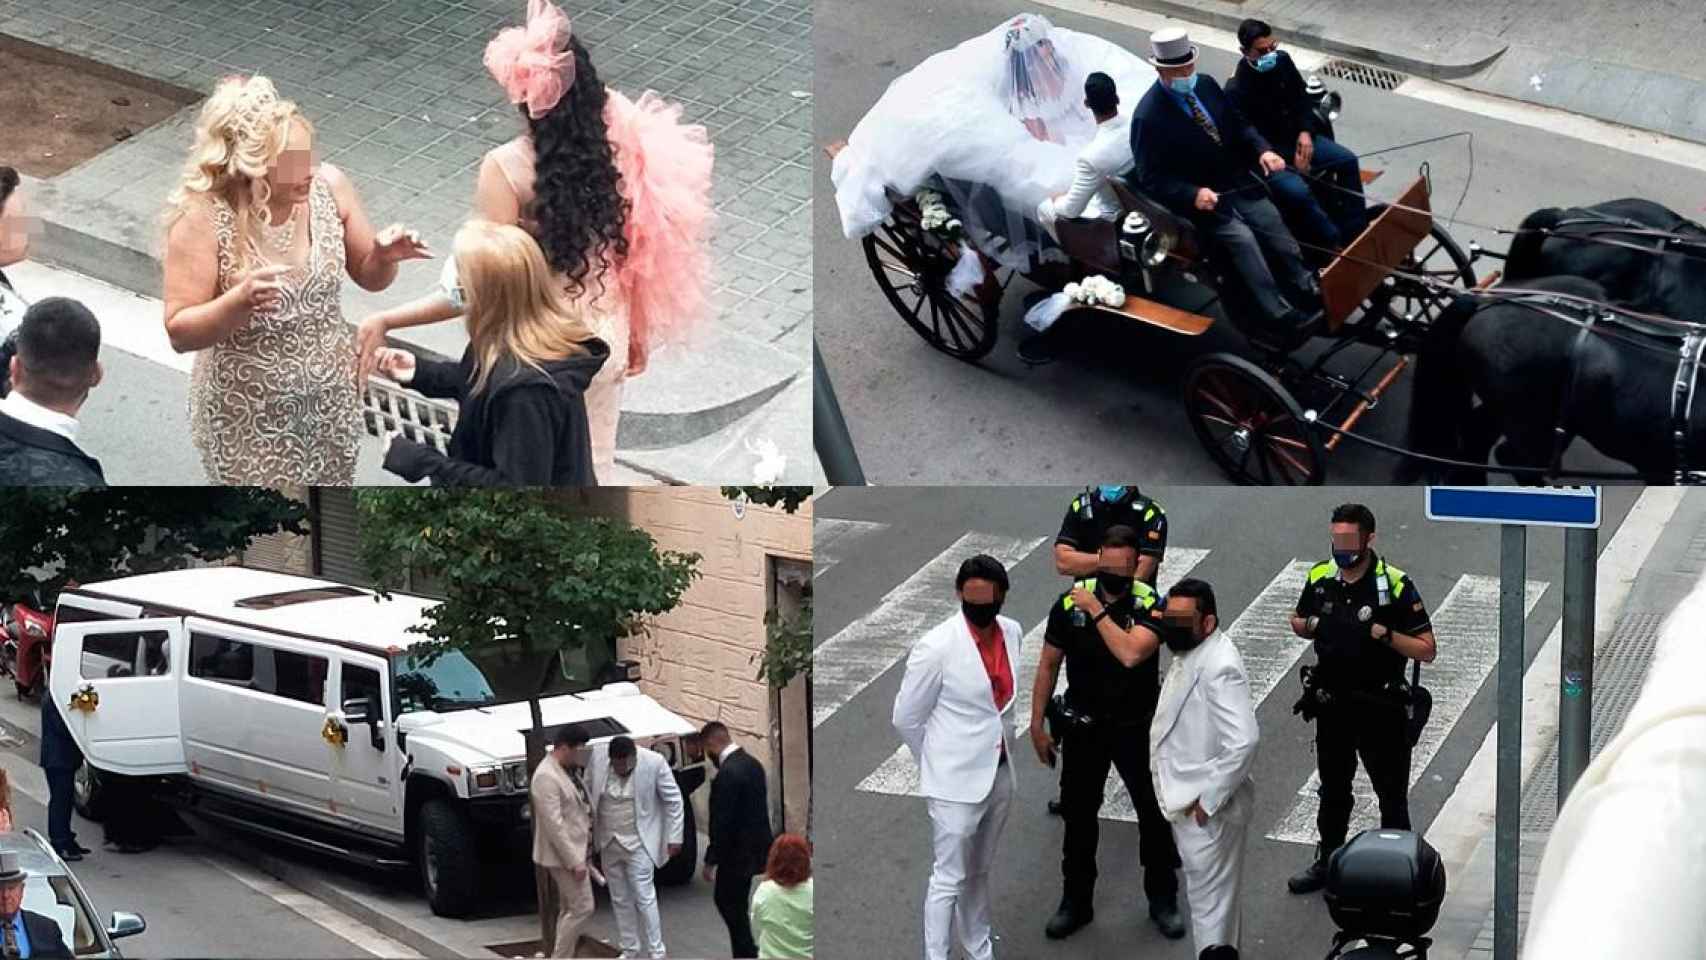 Cuatro instantes de la boda en la calle en Sant Adrià de Besòs el domingo, en plena pandemia / CG